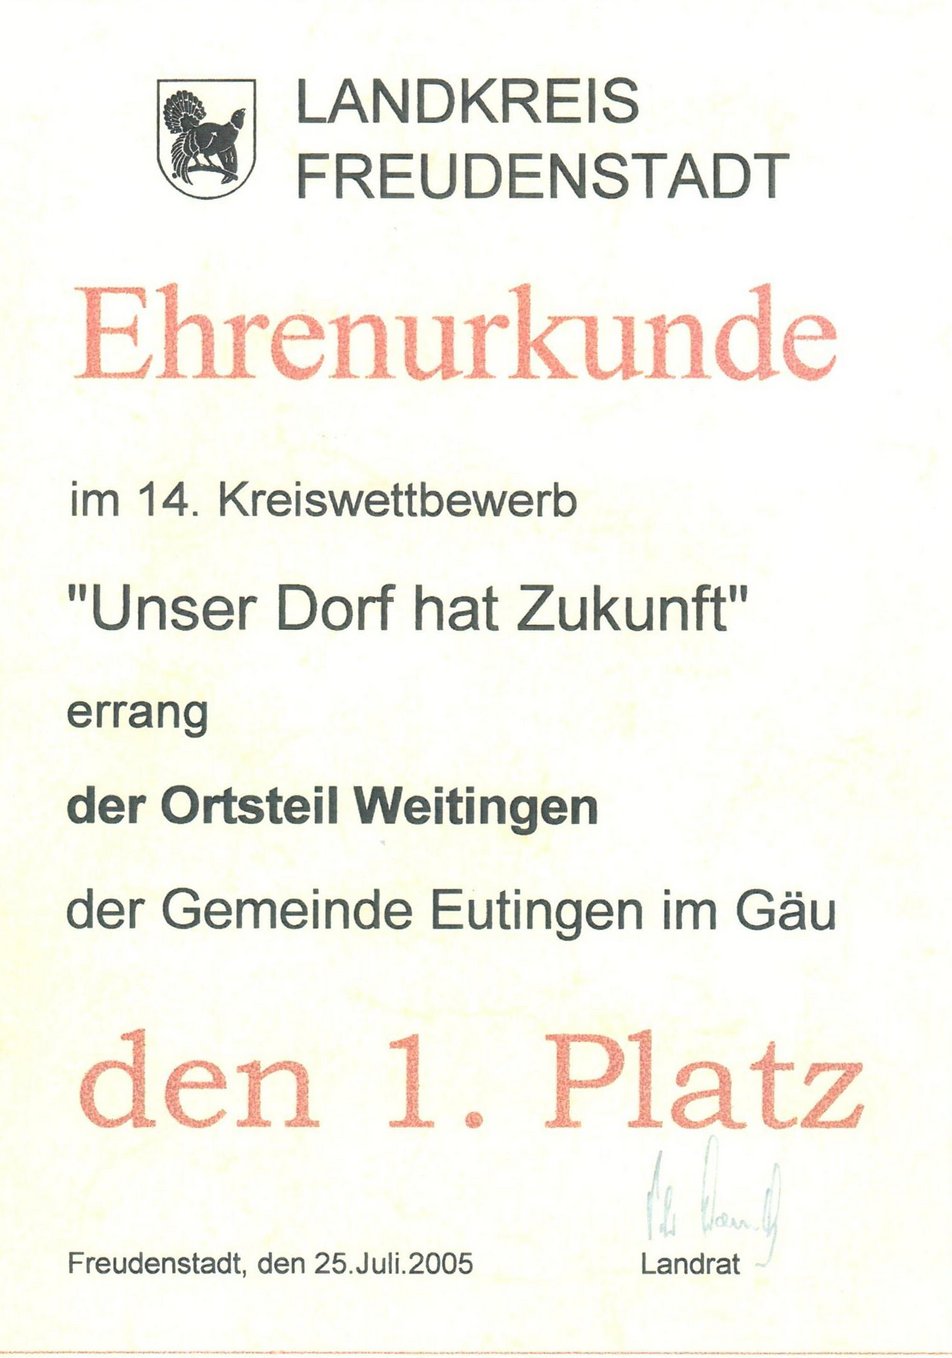 Ehrenurkunde 1. Platz "Unser Dorf hat Zukunft" im 14. Kreiswettbewerb 2005